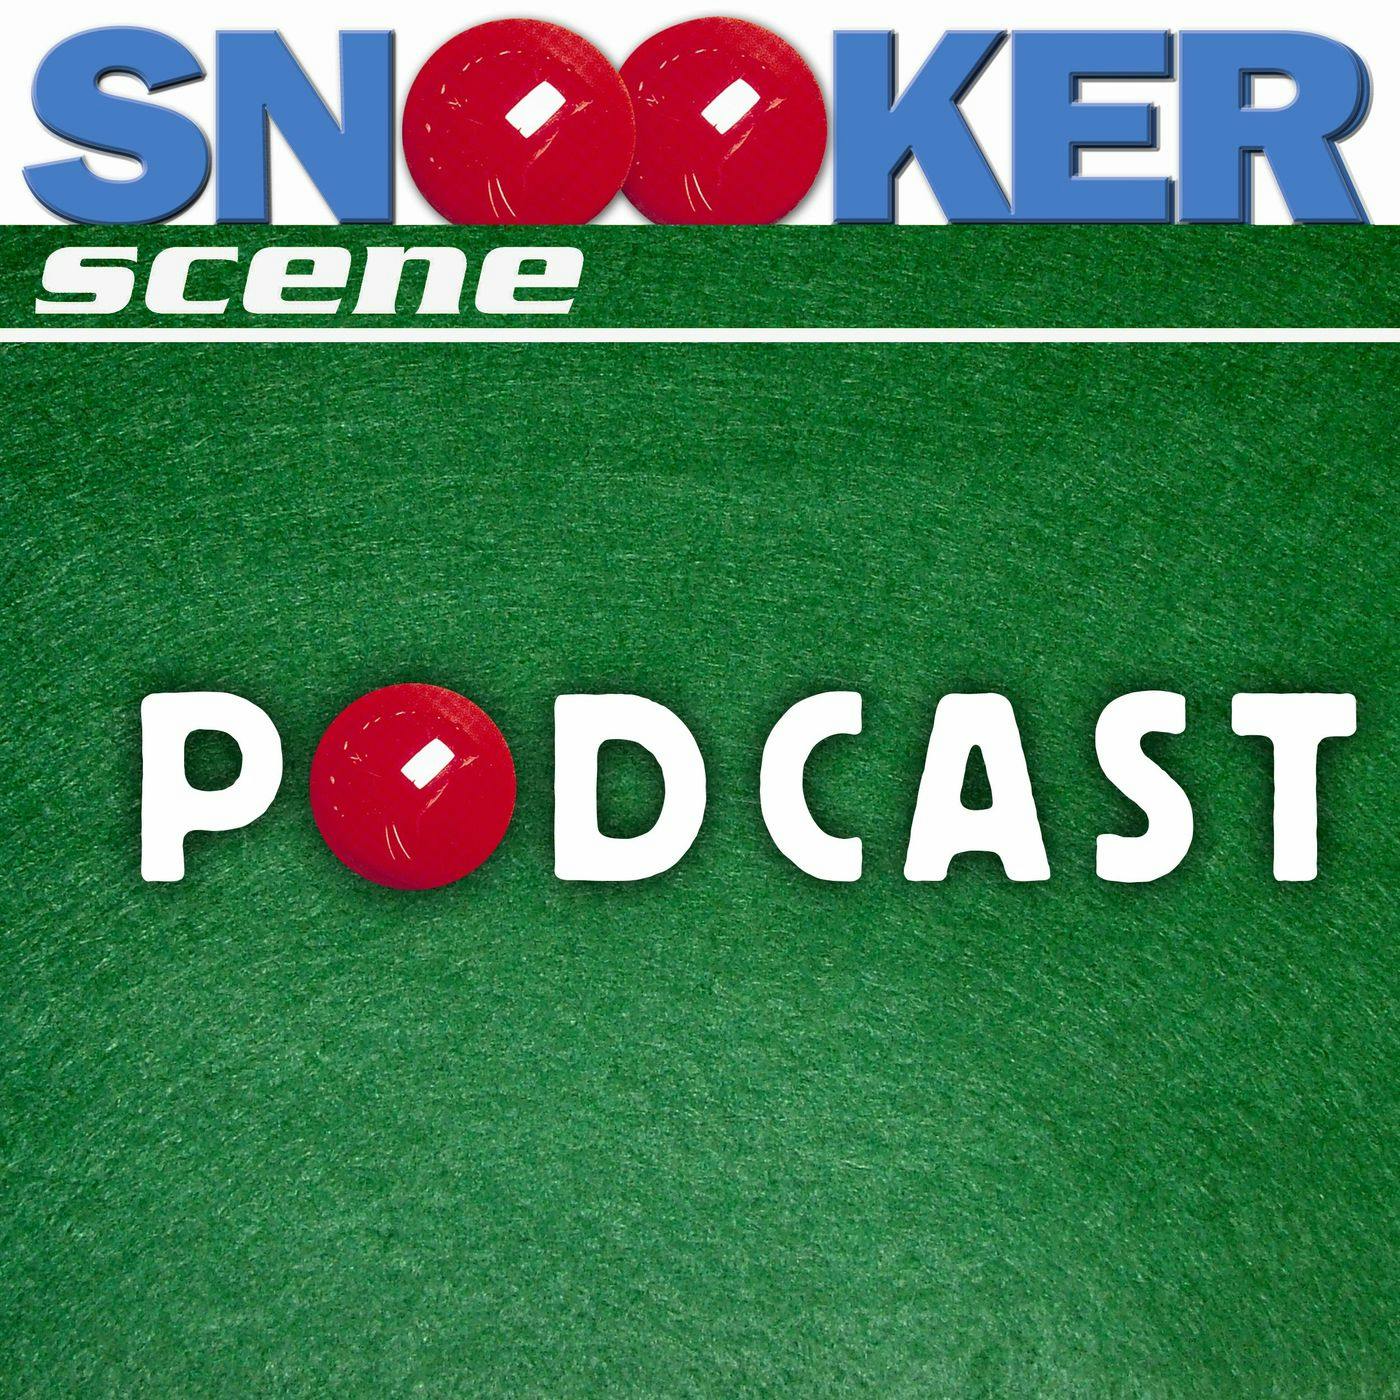 Snooker Scene Podcast episode 59 - Mark King